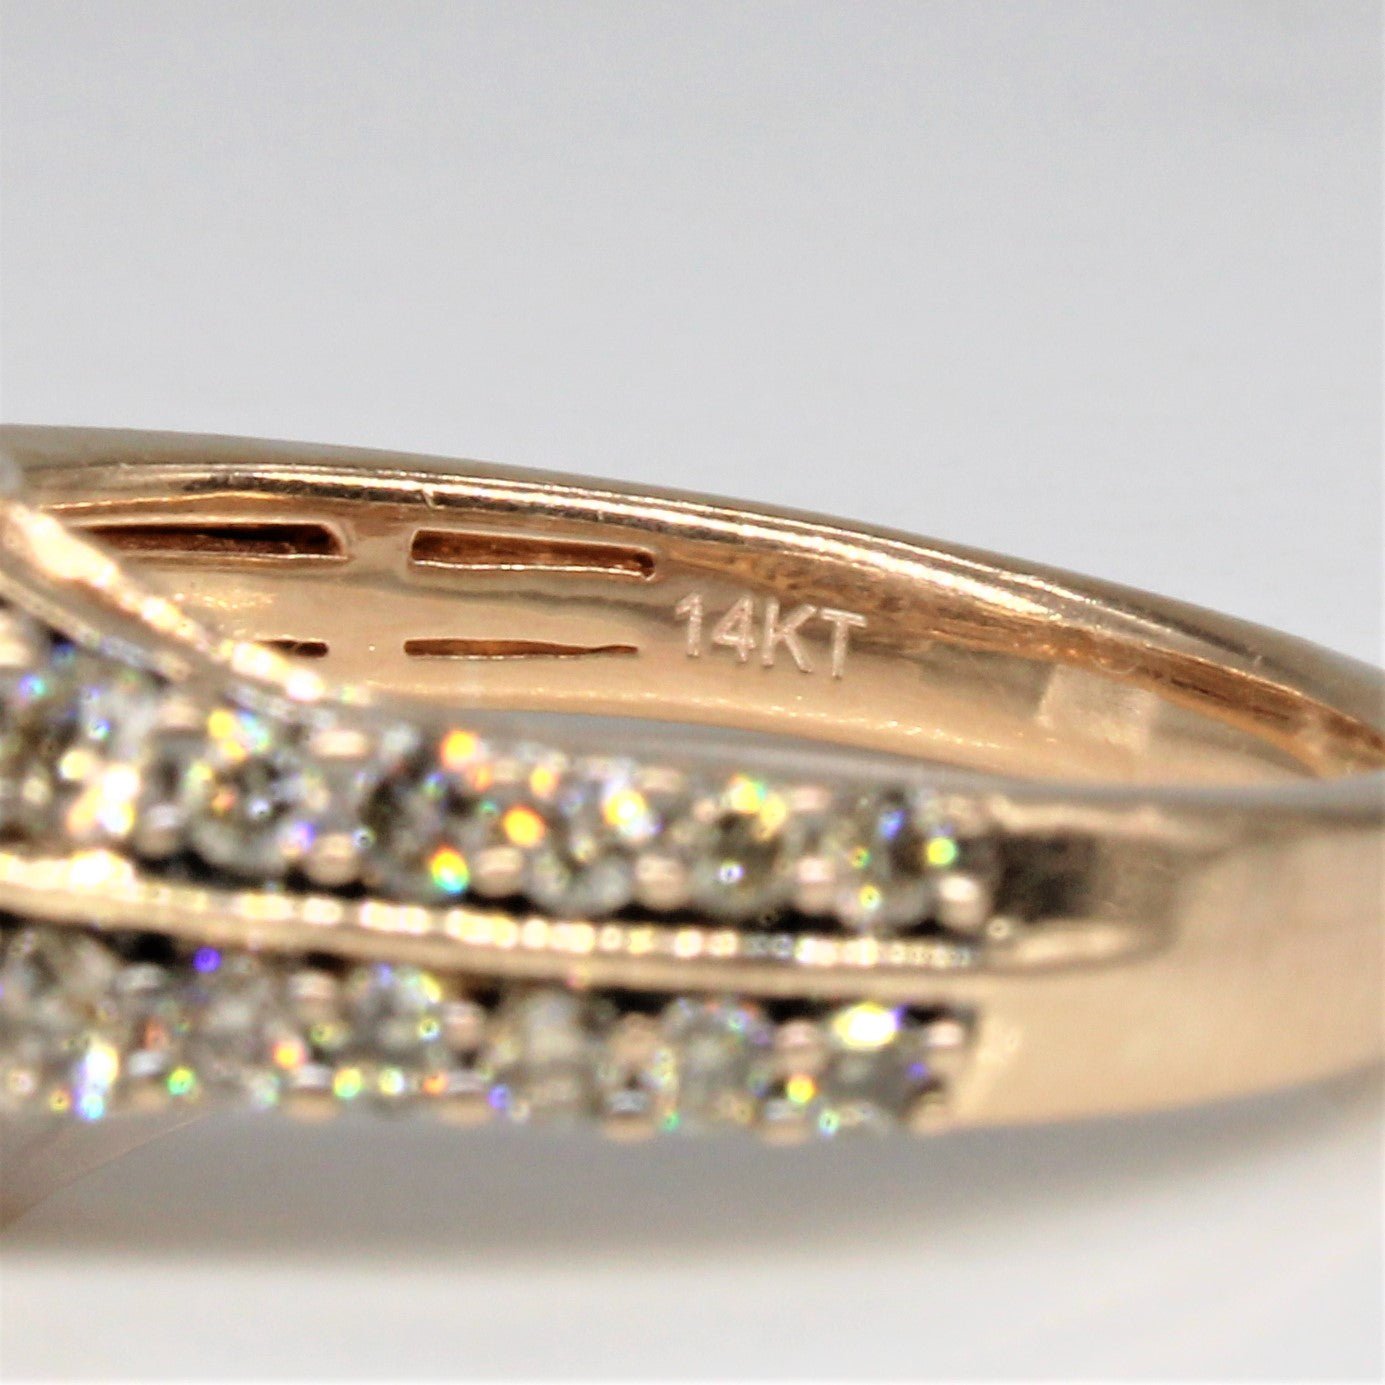 'Le Vian' Sapphire & Diamond Engagement Ring | 0.85ct, 0.58ctw | SZ 7 | - 100 Ways